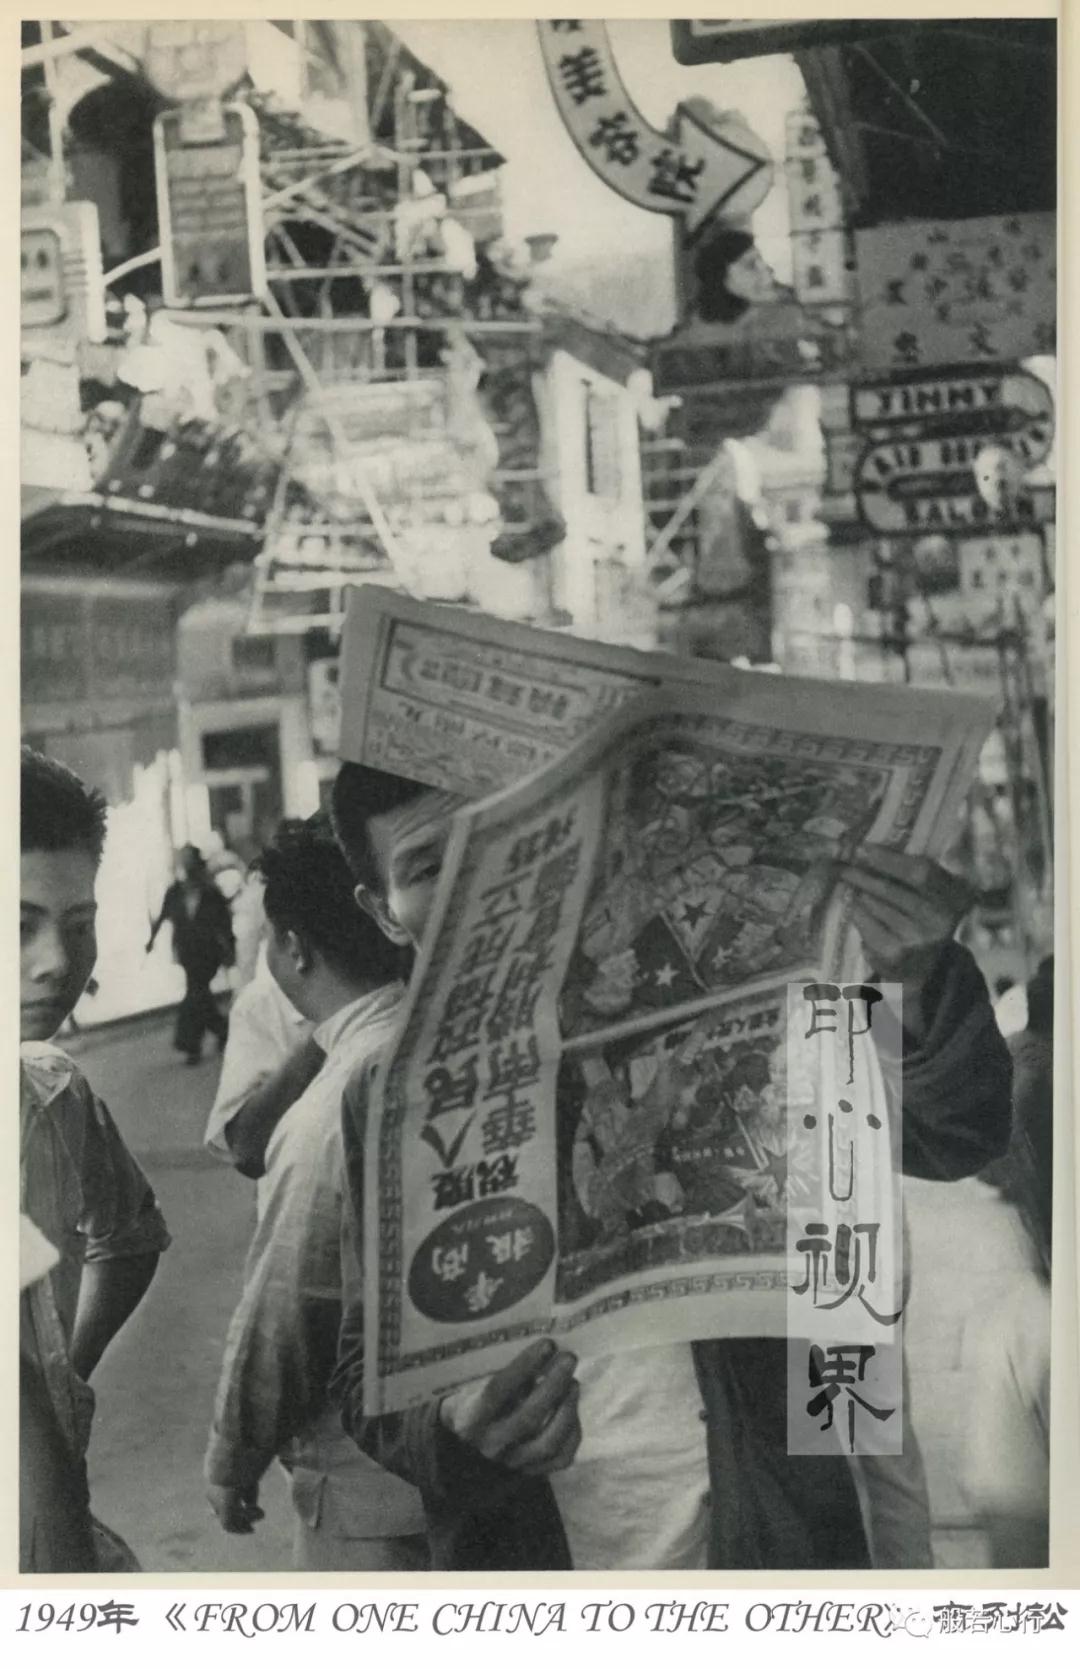 1949年香港,《华商报》号外“华南解放”-布列松